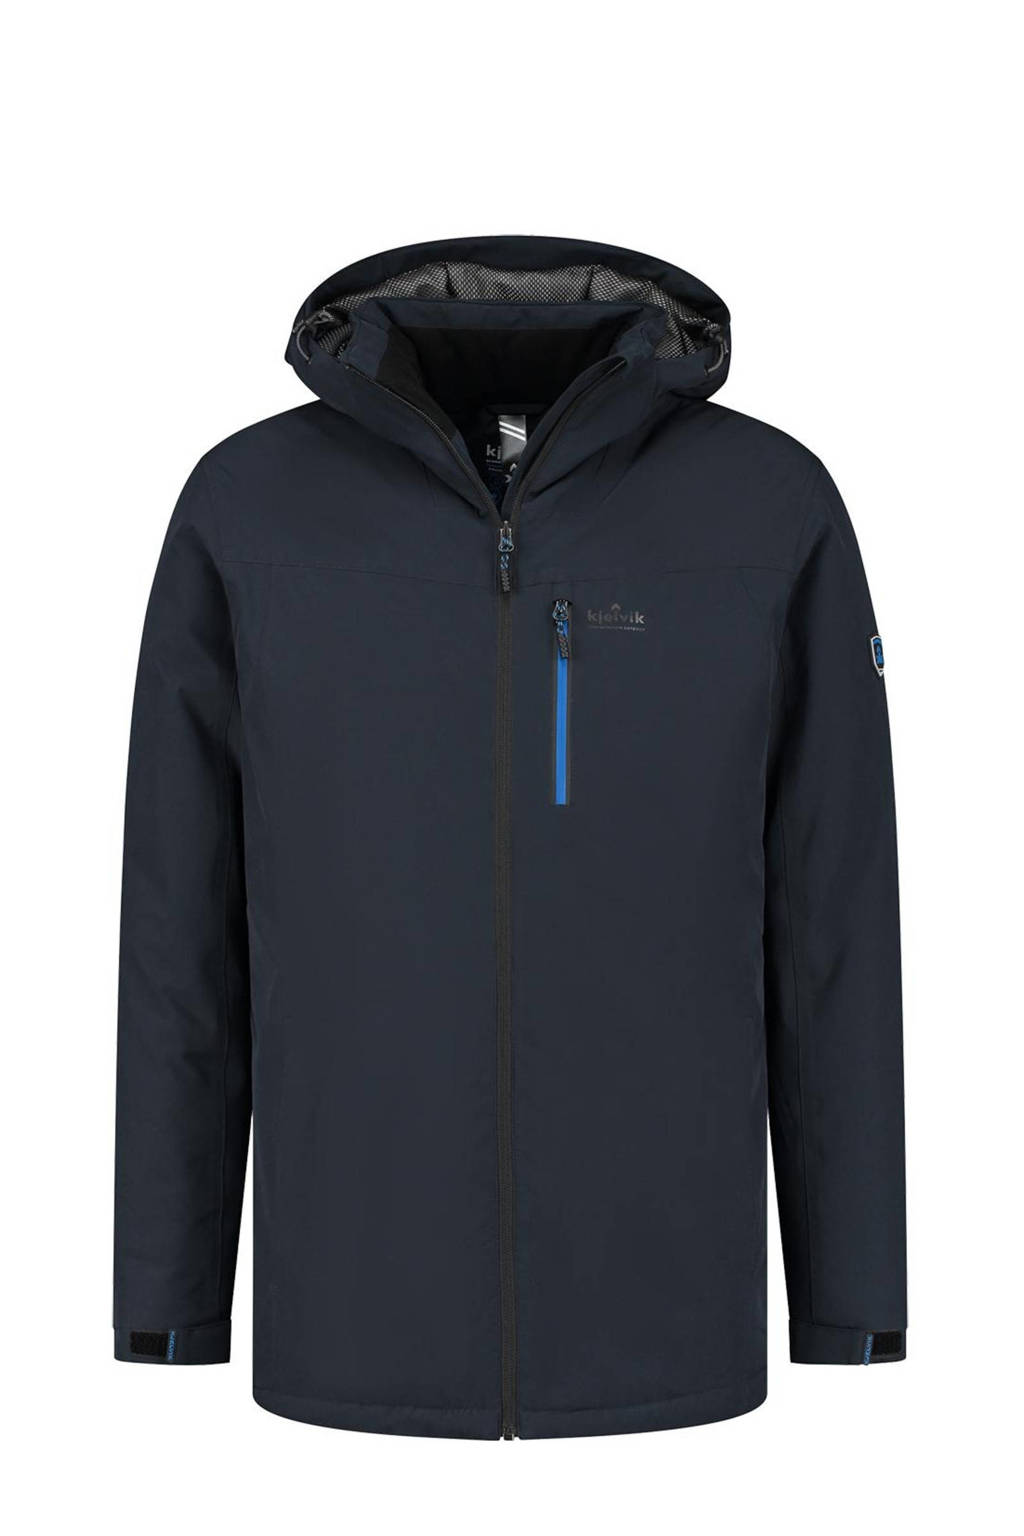 Kjelvik outdoor jas Sven donkerblauw, Donkerblauw